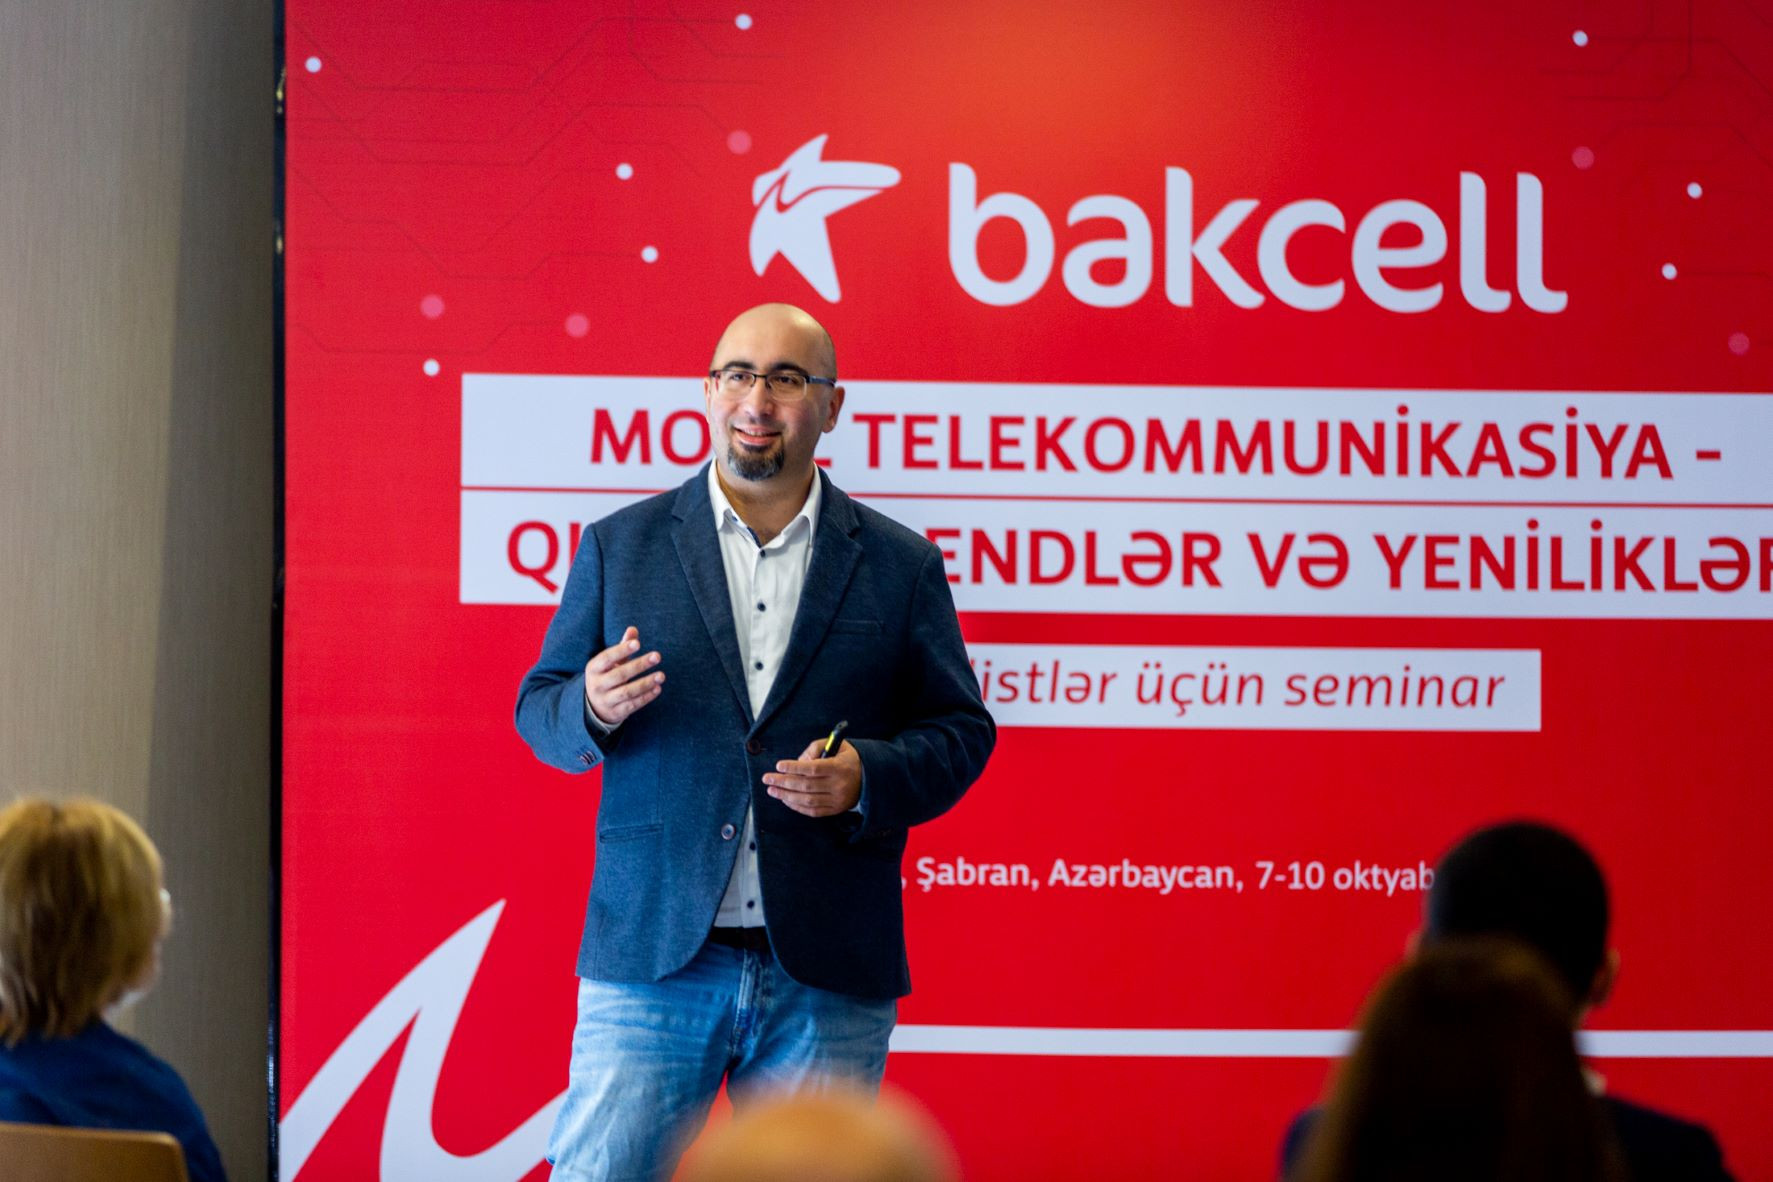 "Bakcell" jurnalistləri mobil telekommunikasiya sahəsinin son trend və yenilikləri ilə tanış edib - FOTO 